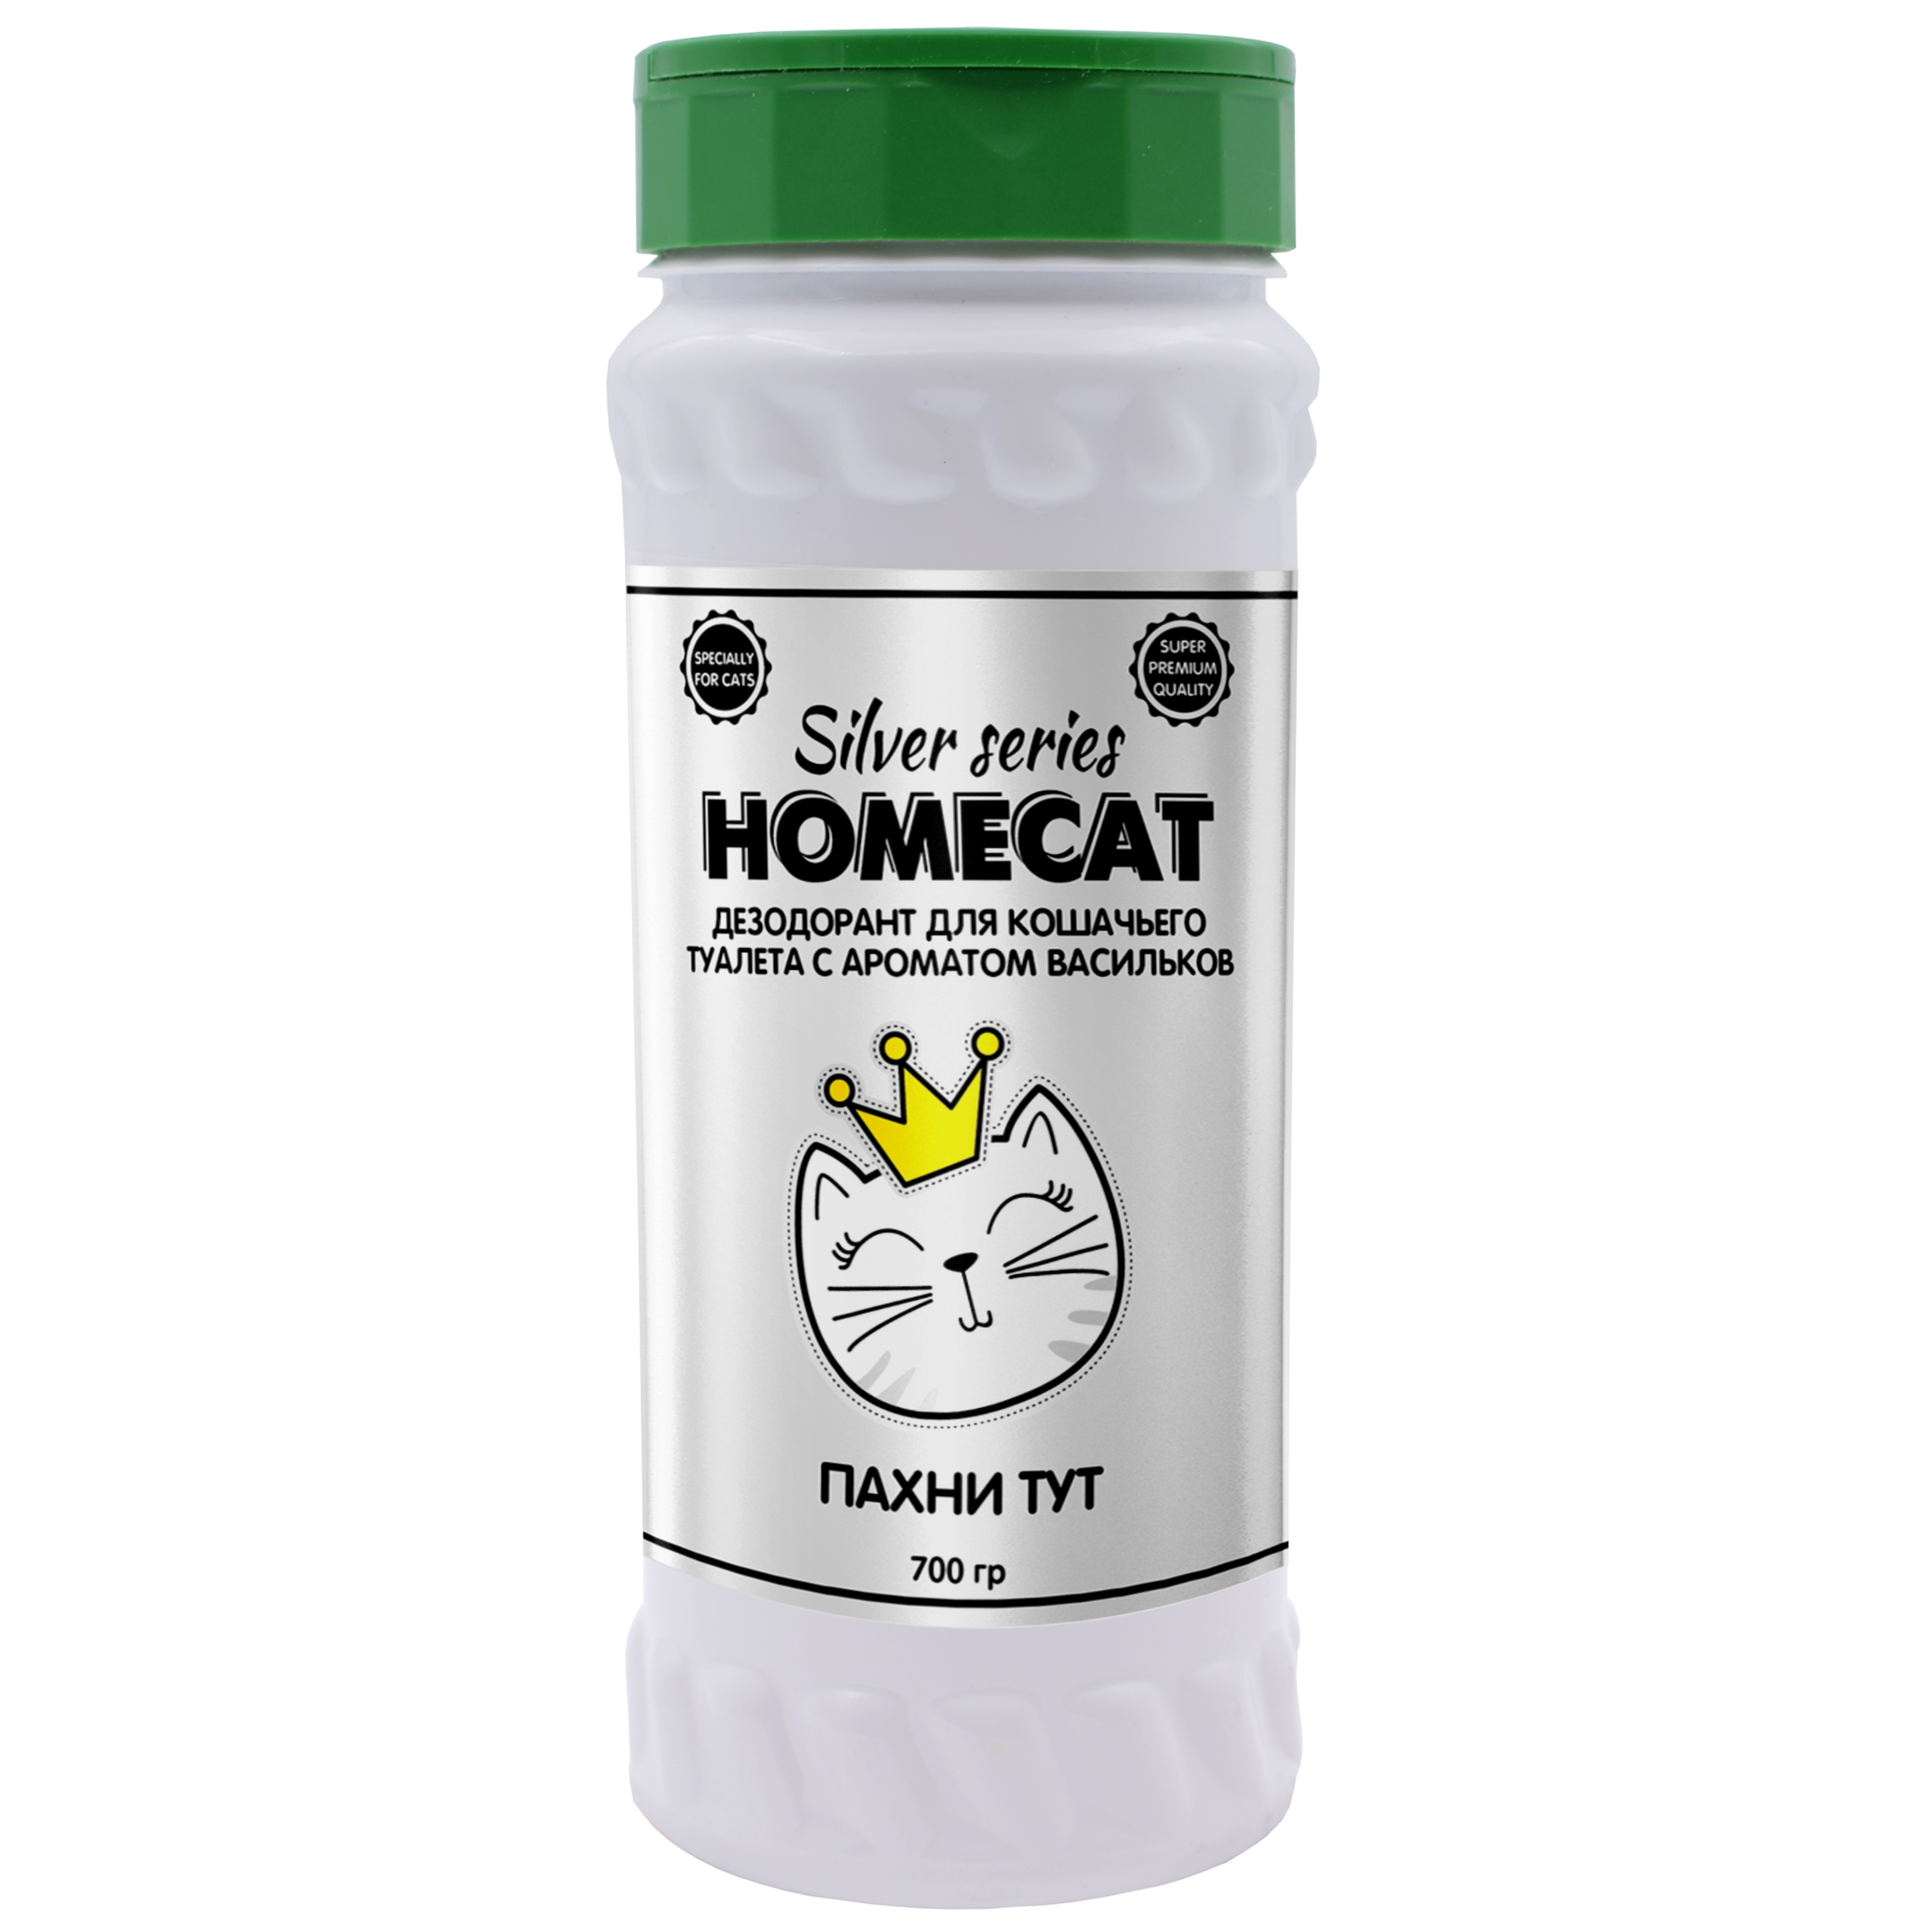 Неприятный здесь. Дезодорант для кошек. Homecat пахни тут. Homecat Silver Series. Порошок Ликвидатор запаха для кошачьего туалета.